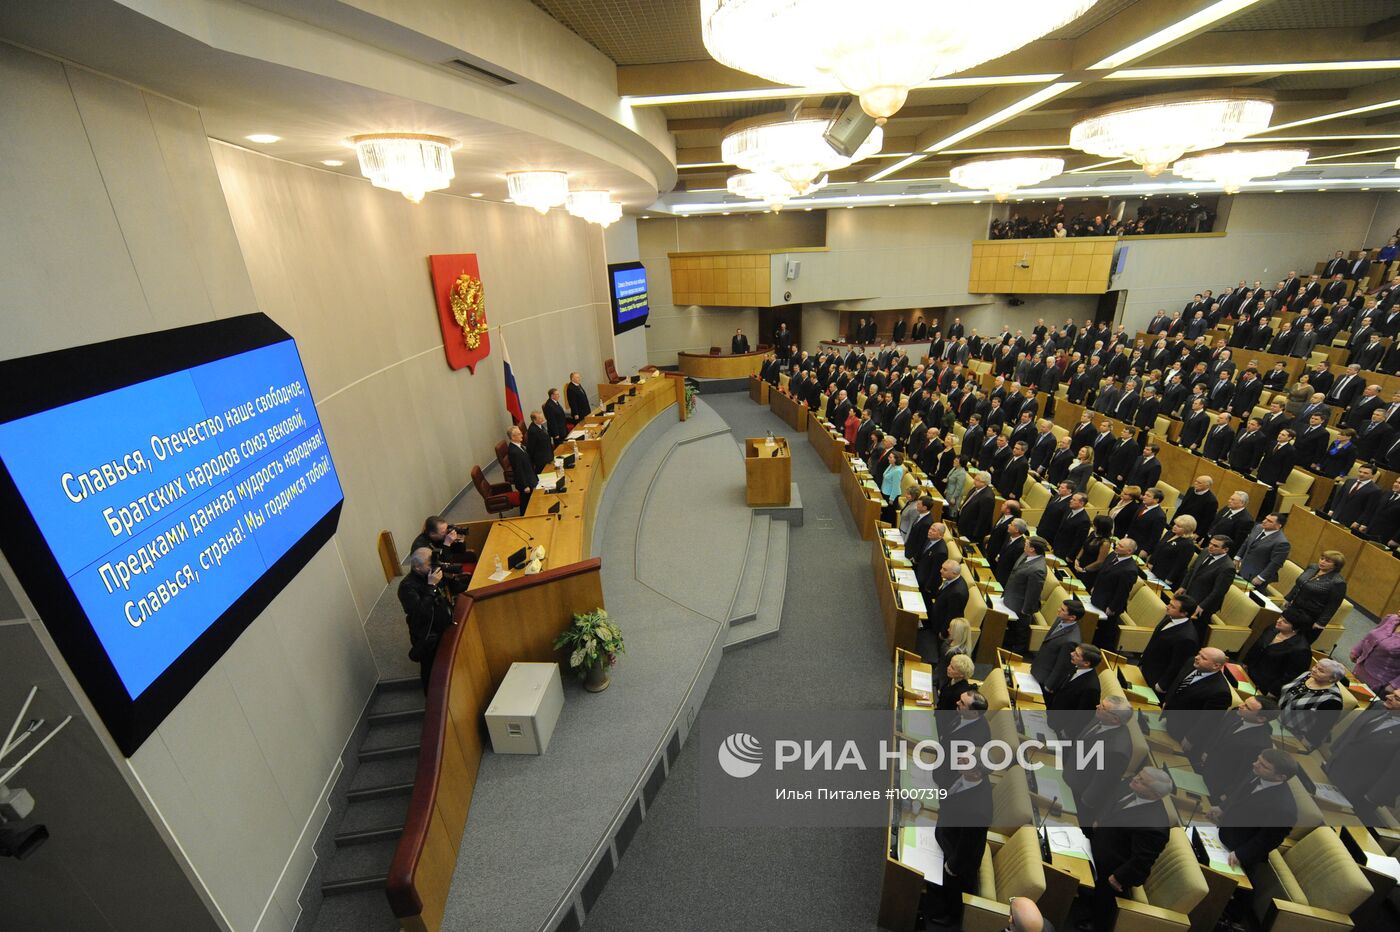 Первое заседание Госдумы РФ шестого созыва